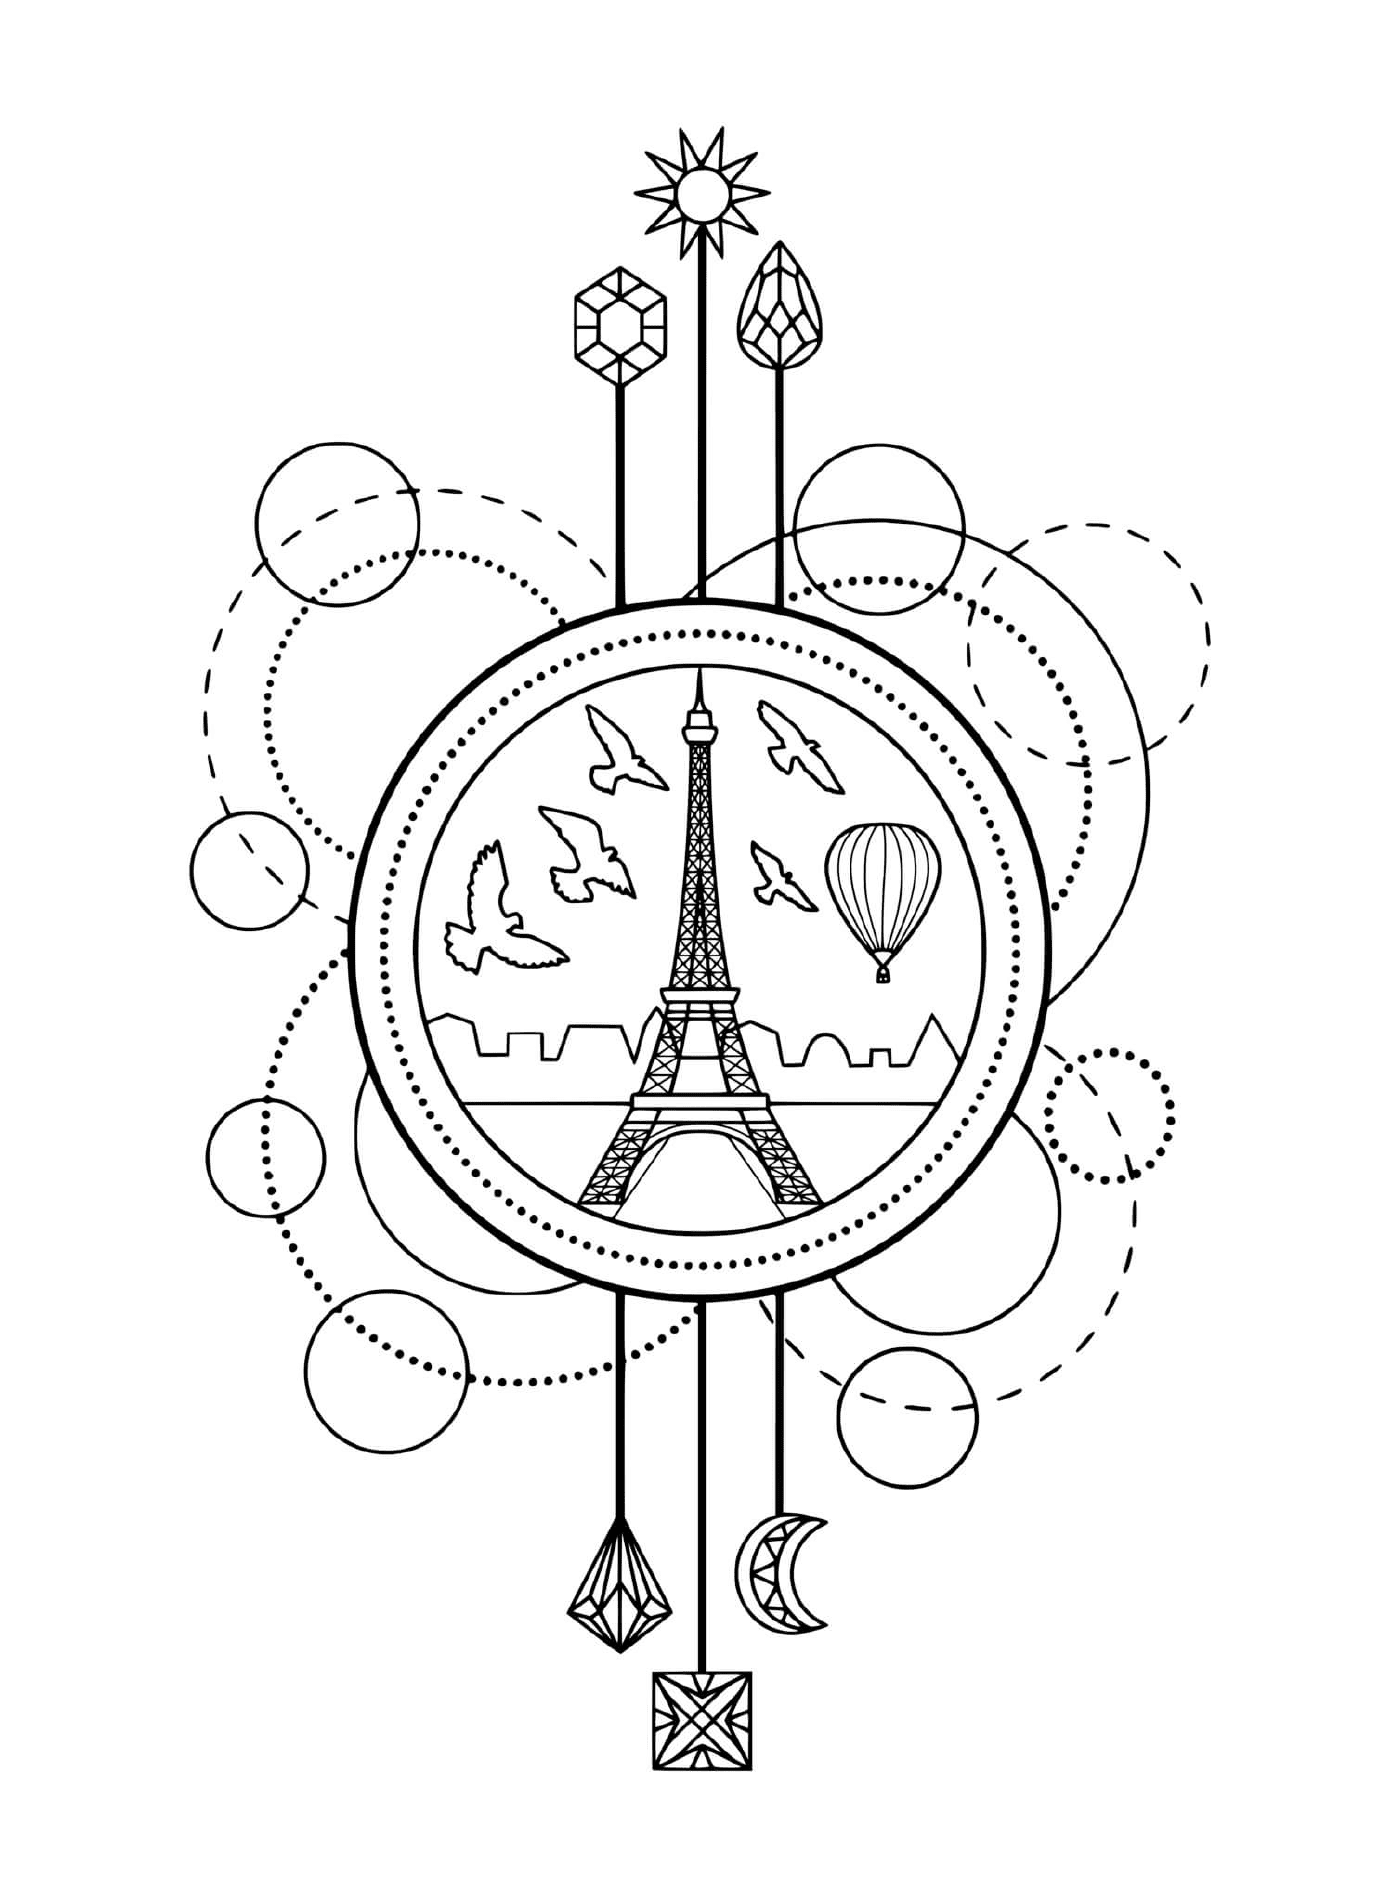  Torre Eiffel y globo aerostático, París 